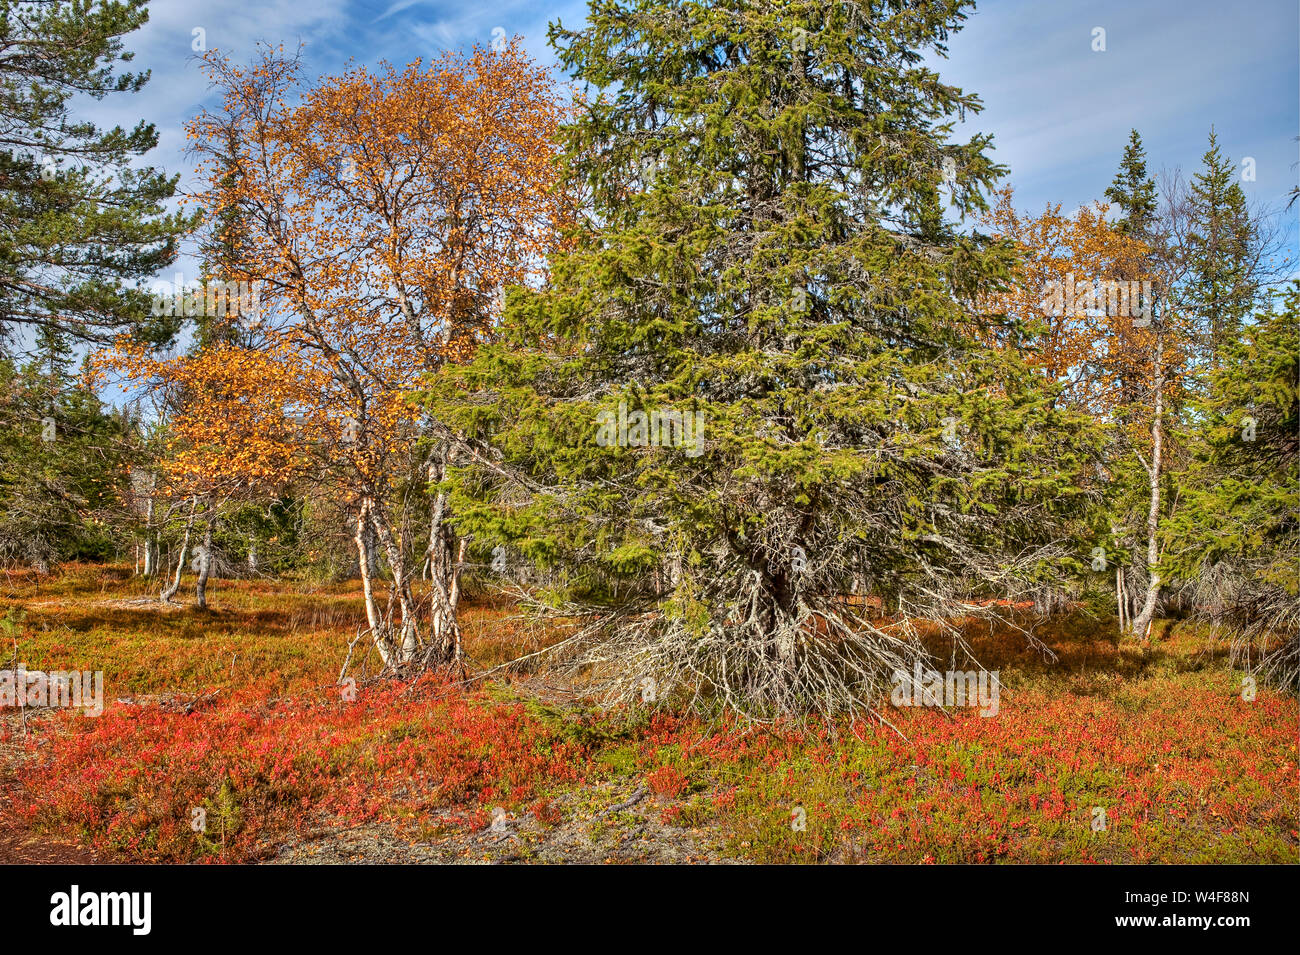 La taïga:Scot's pin (Pinus sylvestris), l'épinette de Norvège (Picea abies) et le bouleau (Betula pubescens ssp. czerepanovii), sur le terrain : Mountain Camarine noire (Empetrum nigrum subsp. hermaphroditum), l'Airelle rouge (Vaccinium vitis-idaea), myrtille (Vaccinium myrtillus), temps Ruska (automne), Parc National Pallas-Yllastunturi, Laponie, Finlande Banque D'Images